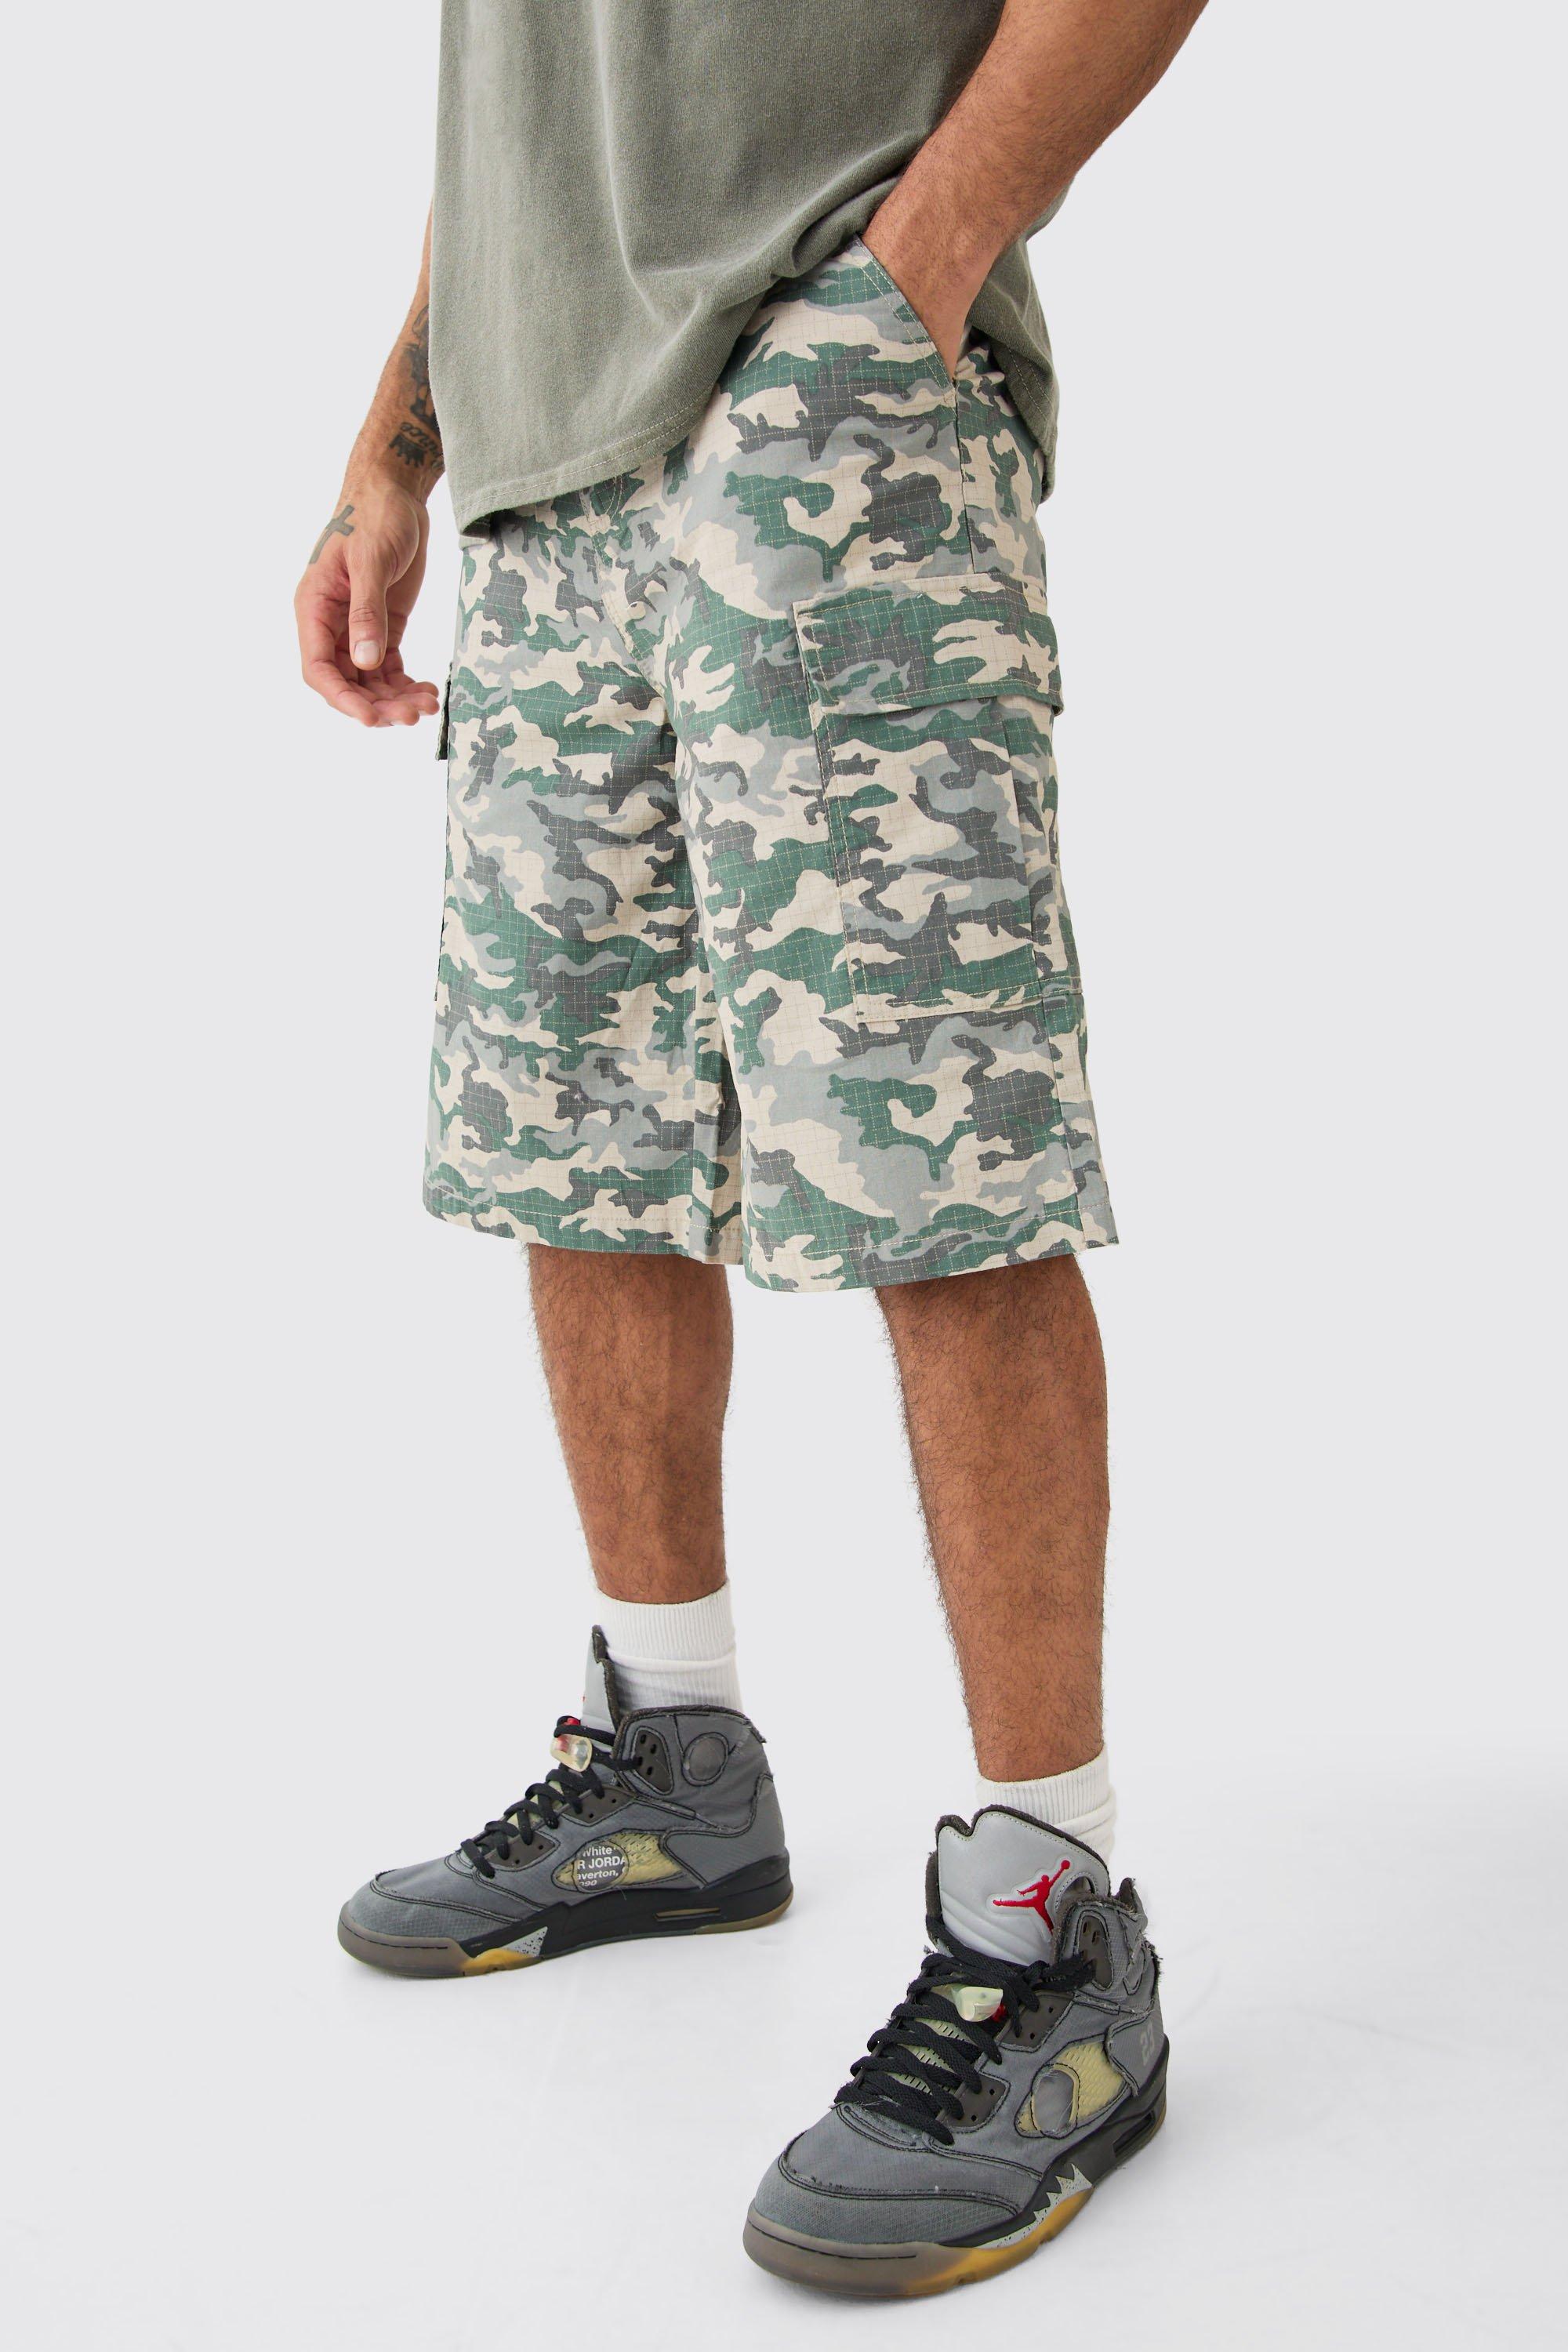 Image of Pantaloni tuta in nylon ripstop in fantasia militare con etichetta intessuta, Verde